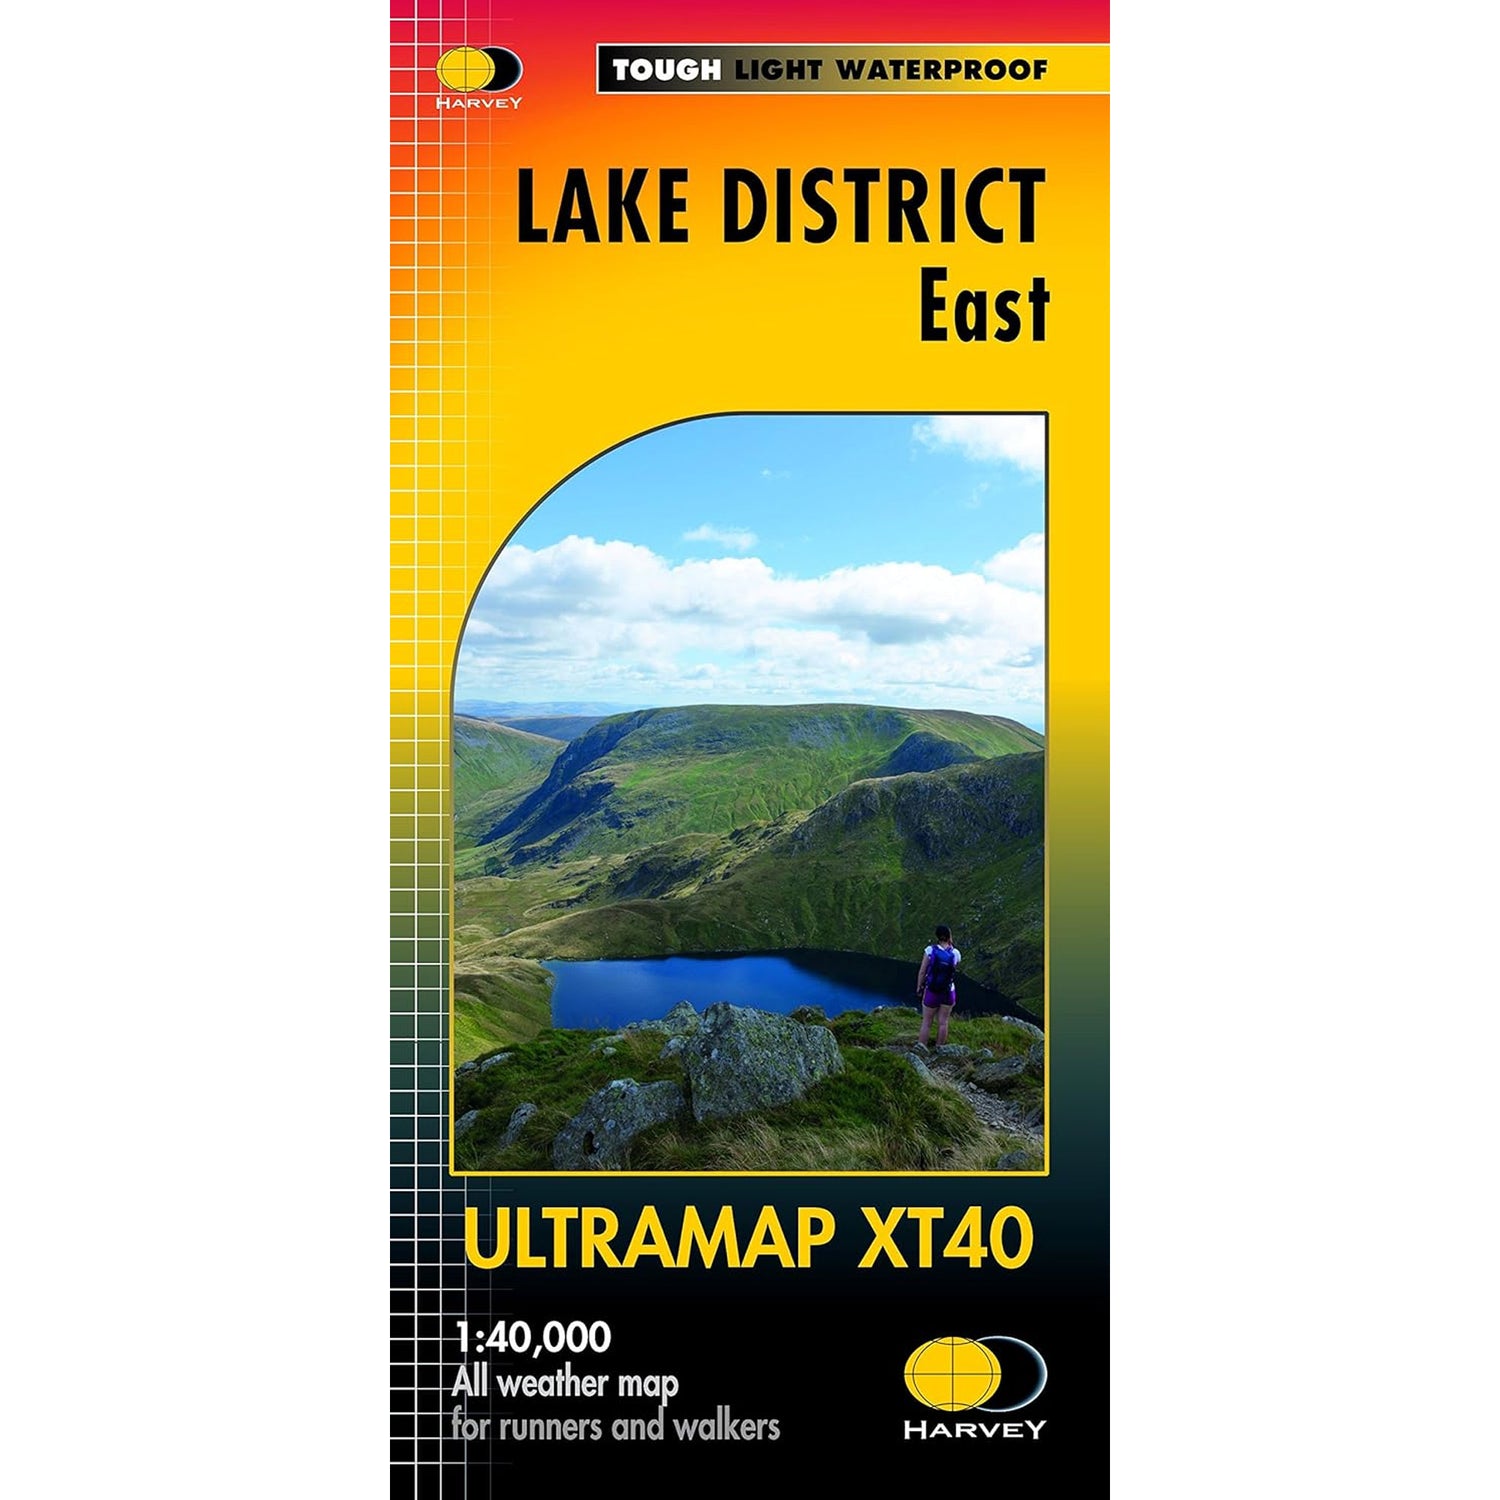 Ultramap Xt40 Map: Lake District East